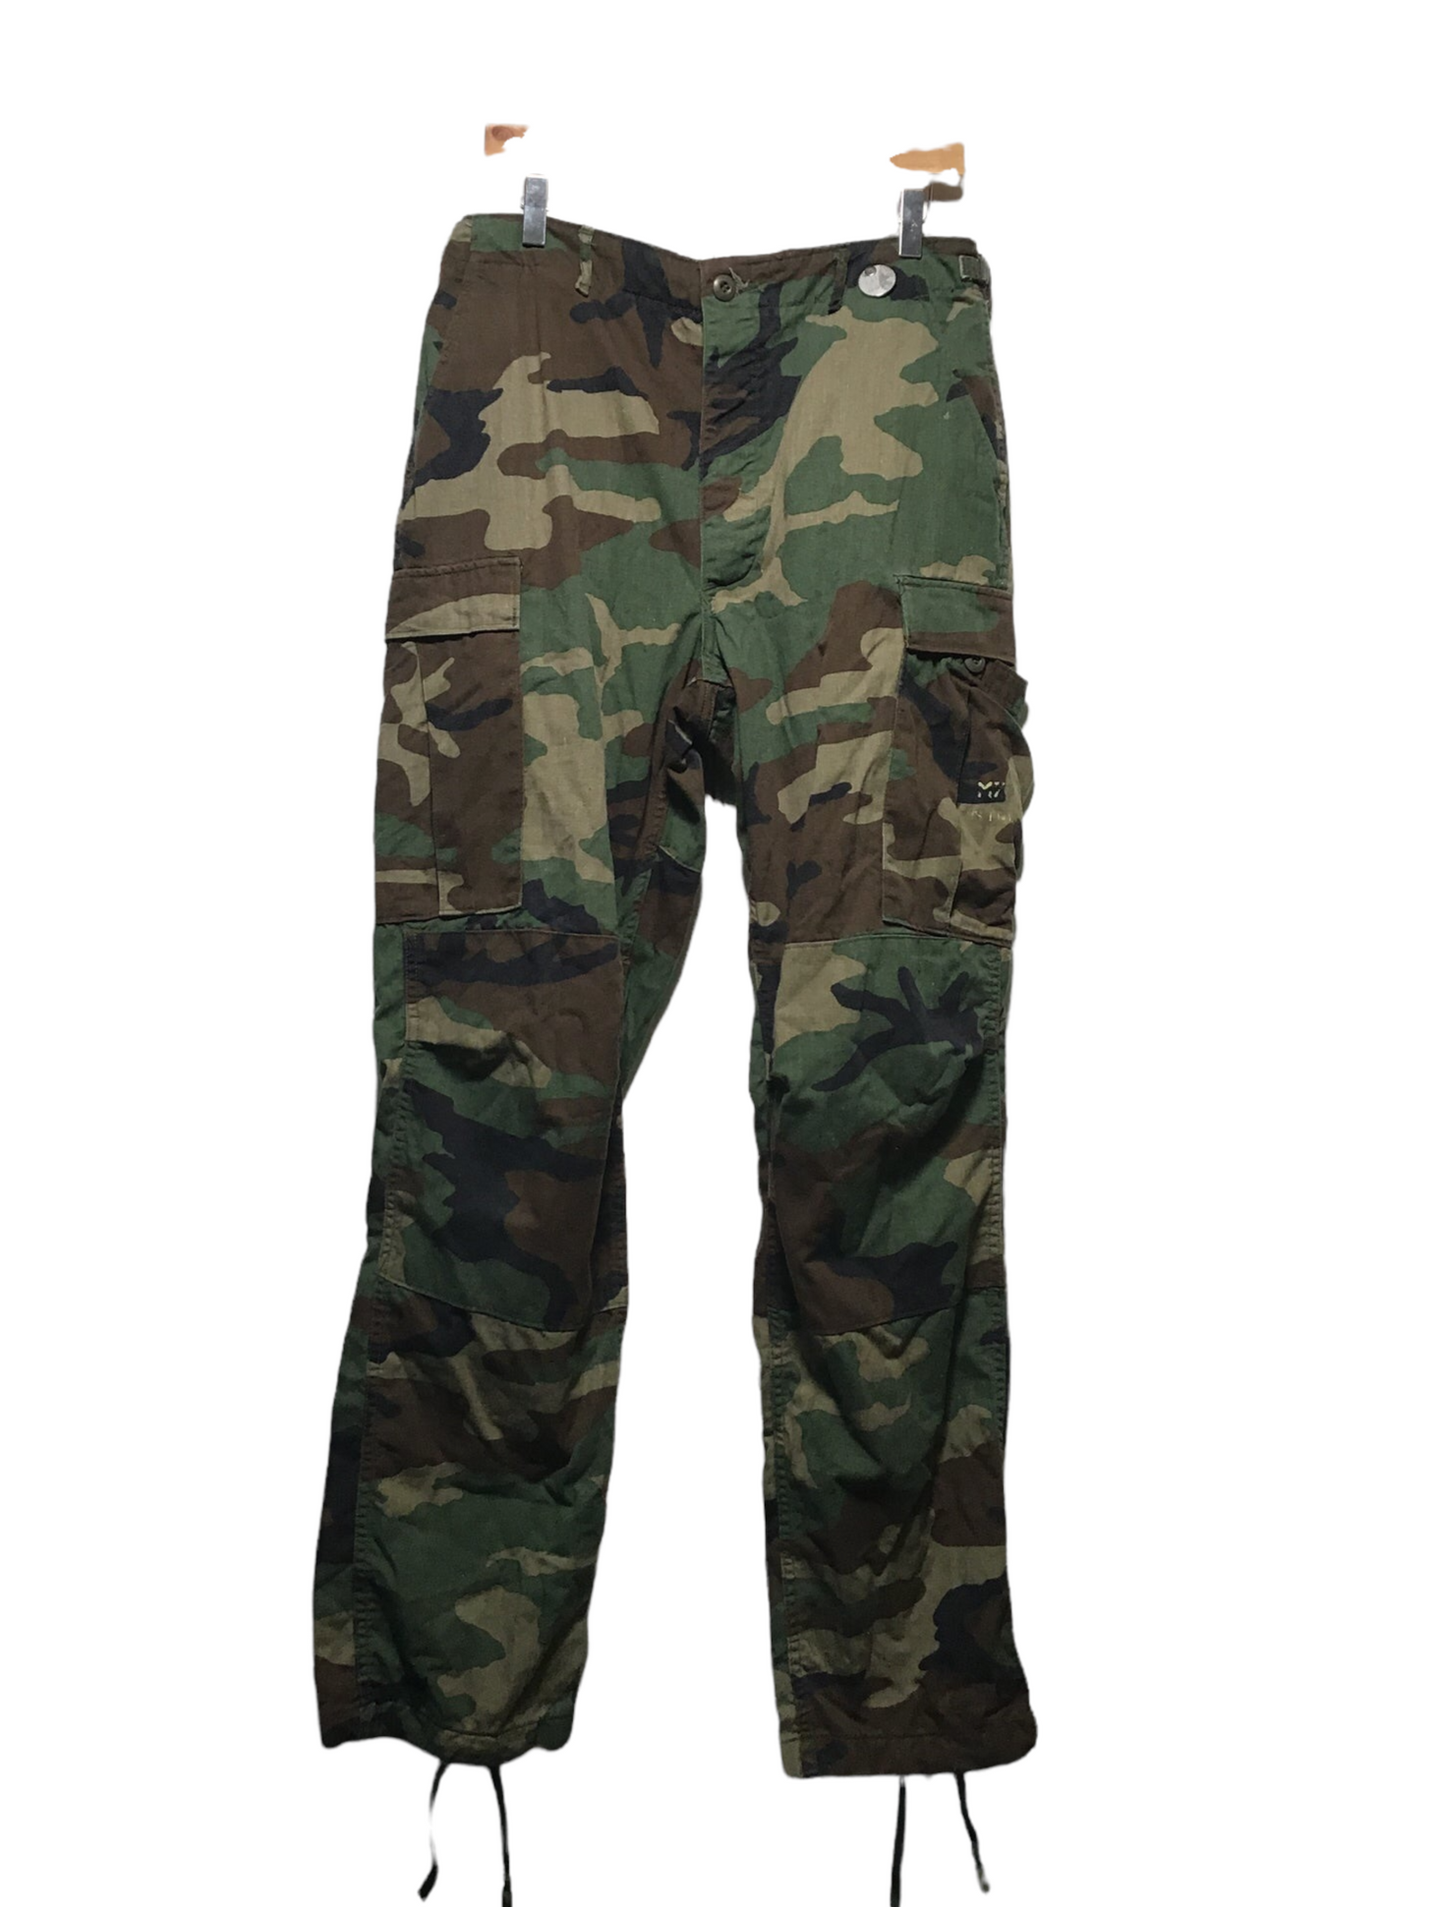 Army Pants (32X30)